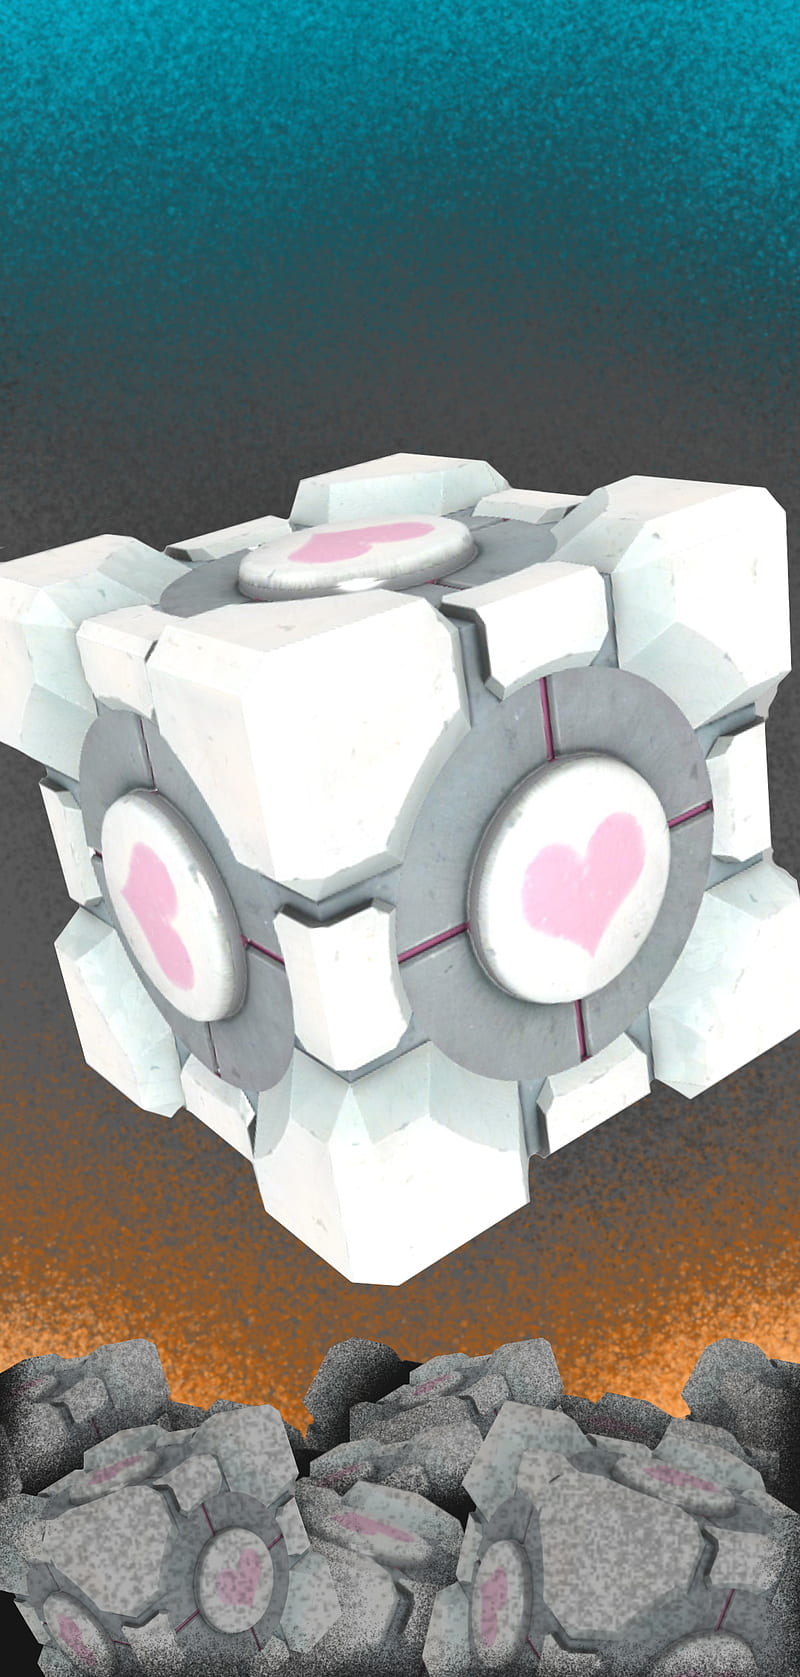 Portal 2 Companion Cube